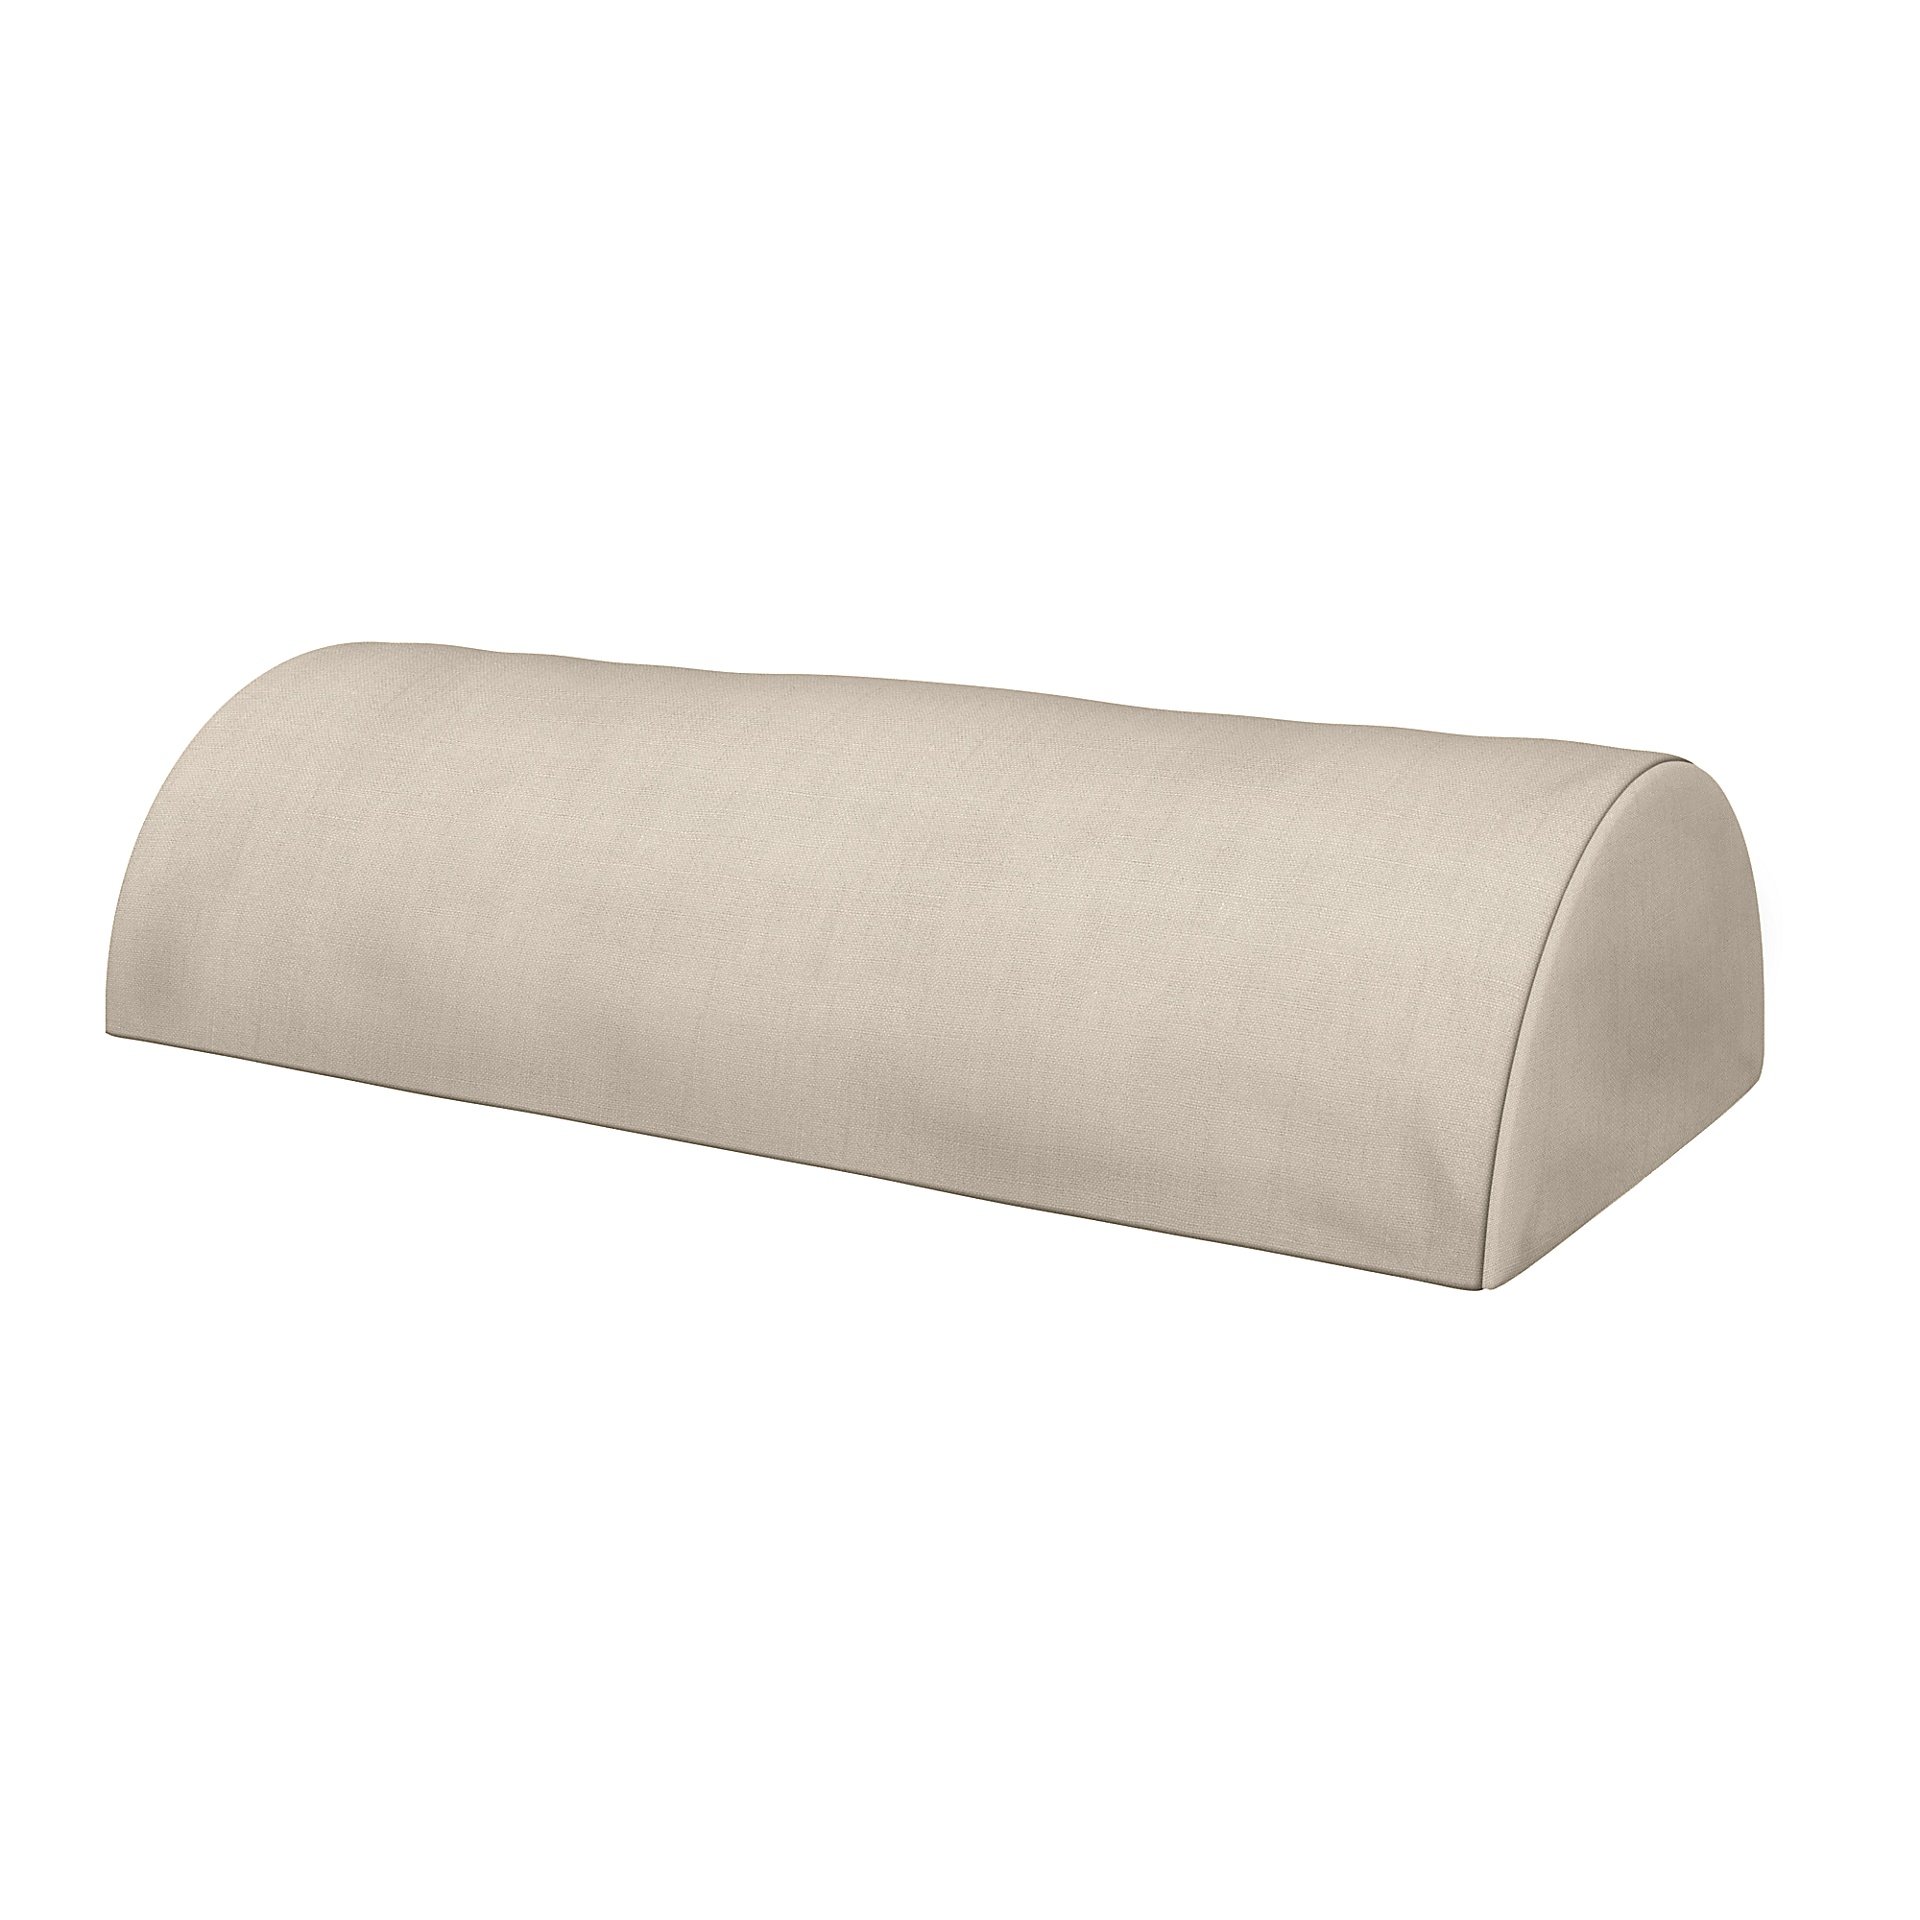 IKEA - Cushion Cover Beddinge Half Moon , Parchment, Linen - Bemz